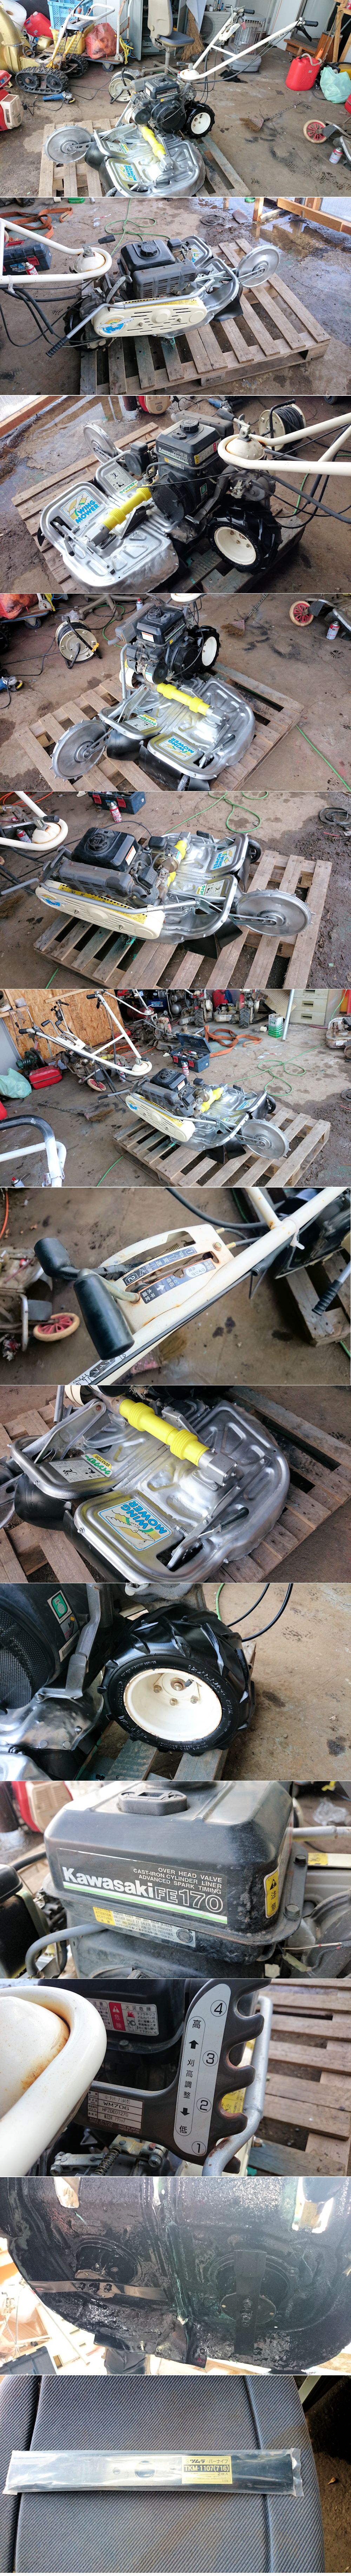 自走二面畦(あぜ)草刈機 オーレック WM706 整備塗装 ナイフ新品 中古 カワサキFE170 5.6馬力